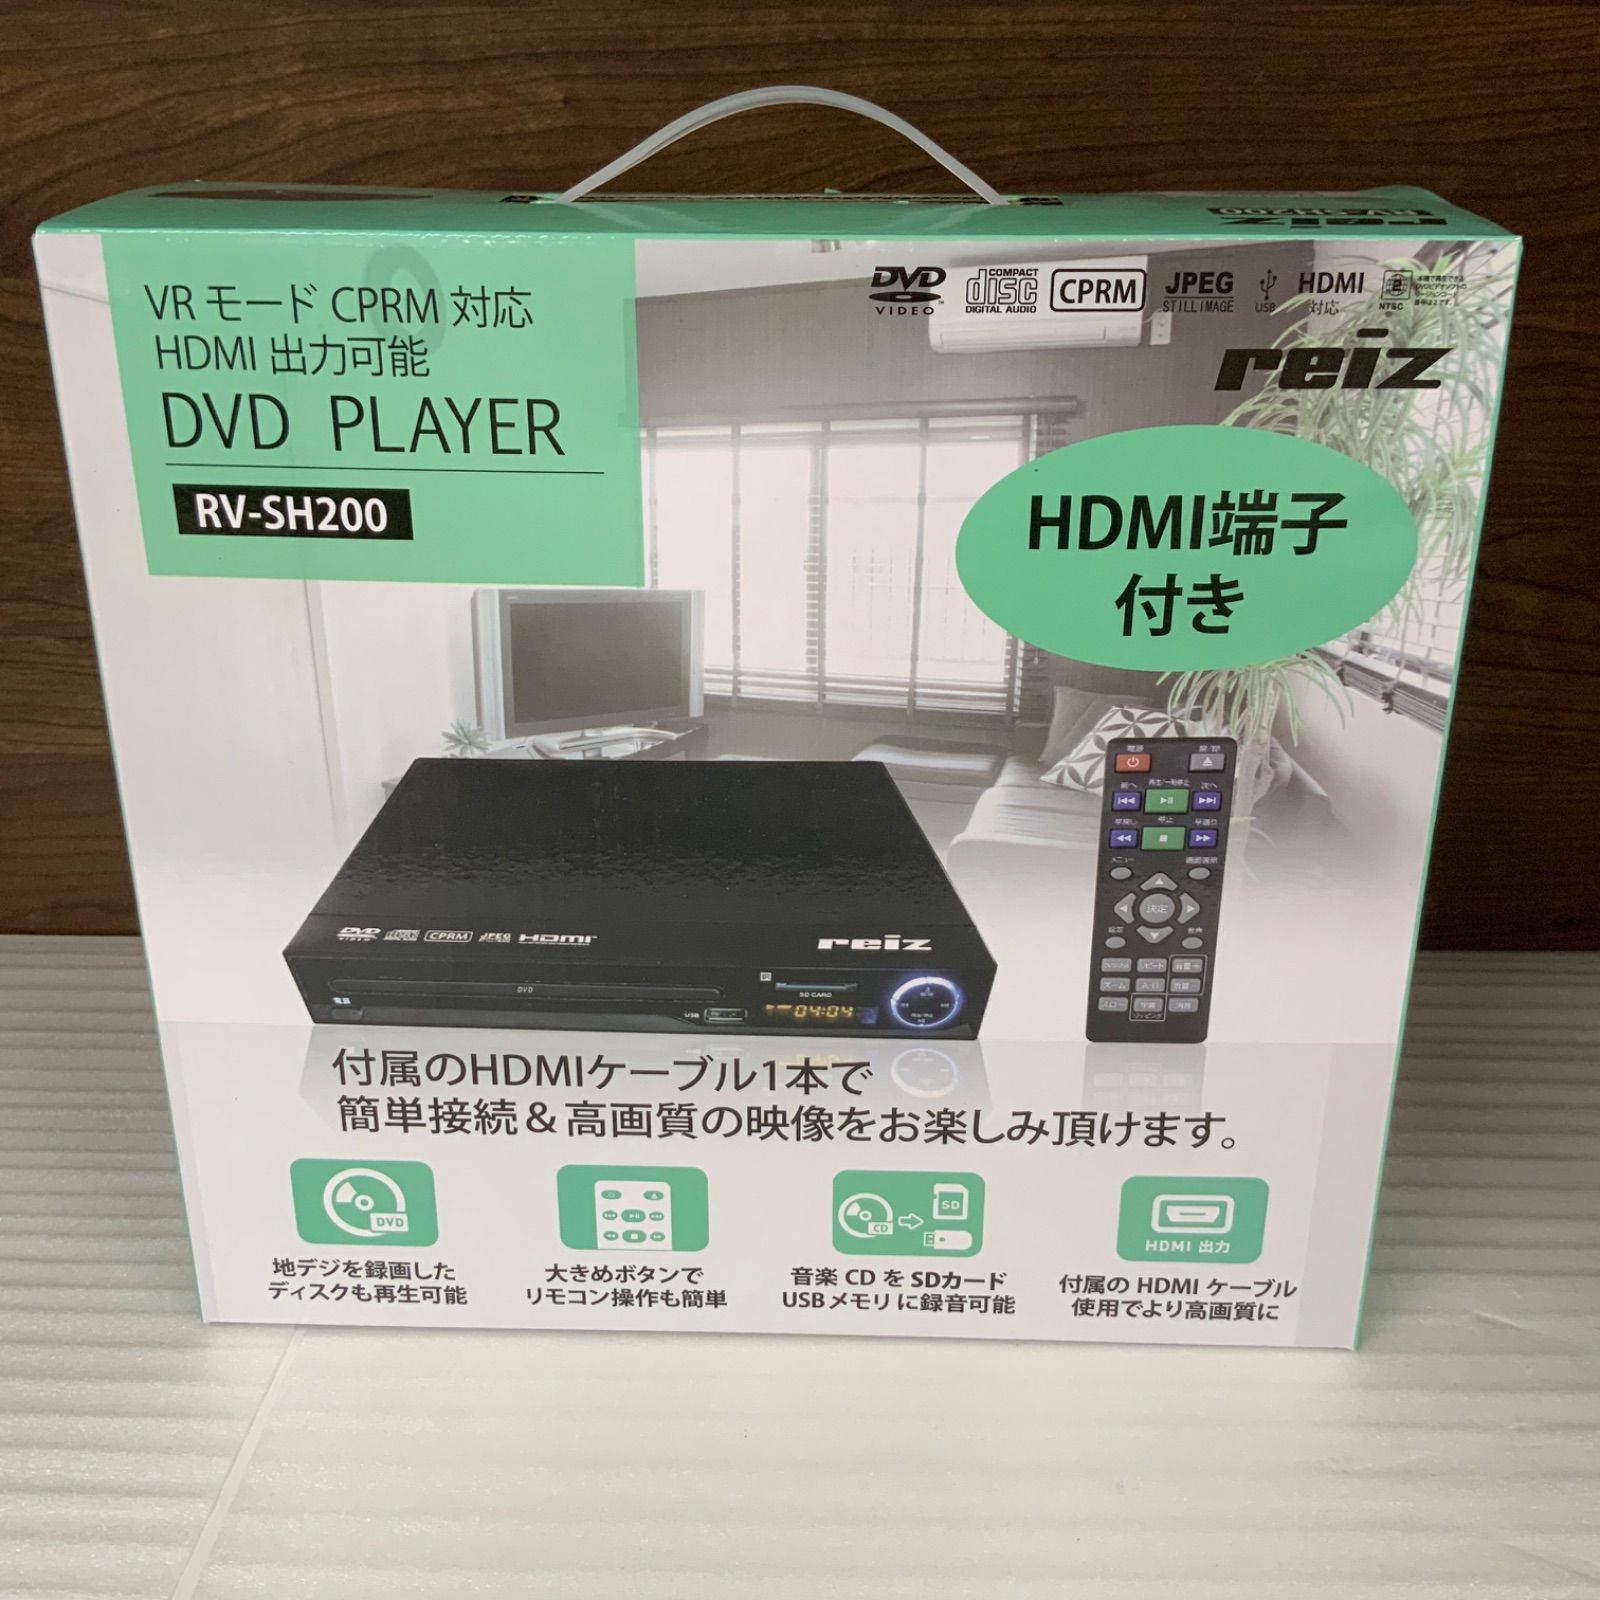 テレビ/映像機器Reiz HDMI端子搭載DVDプレーヤー RV-SH200